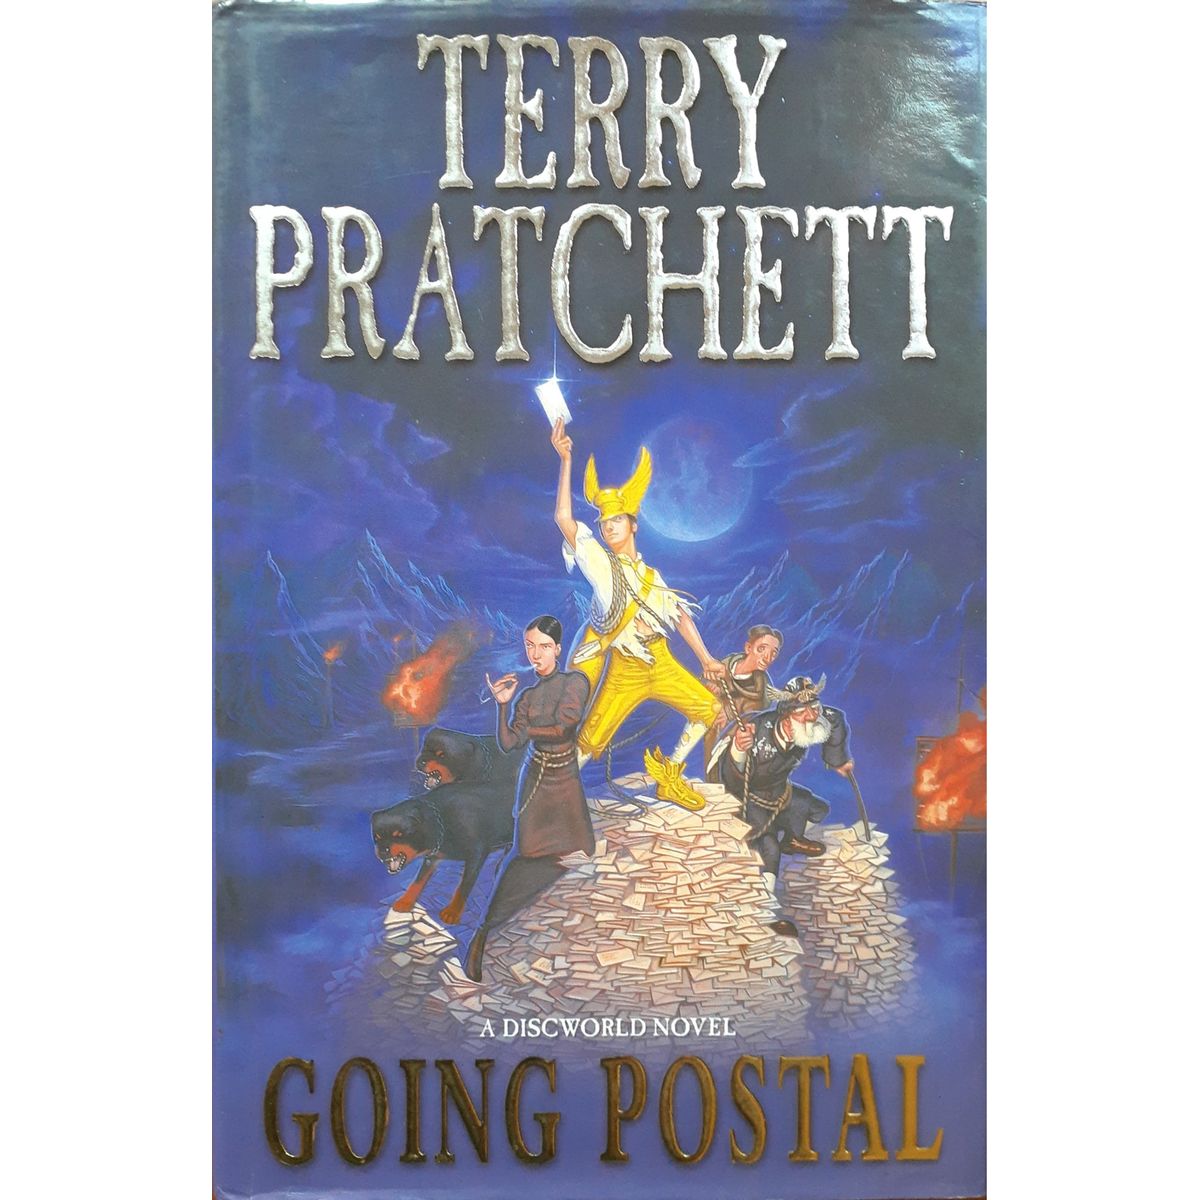 ISBN: 9780552149433 / 0552149438 - Going Postal: A Discworld Novel by Terry Pratchett [2005]